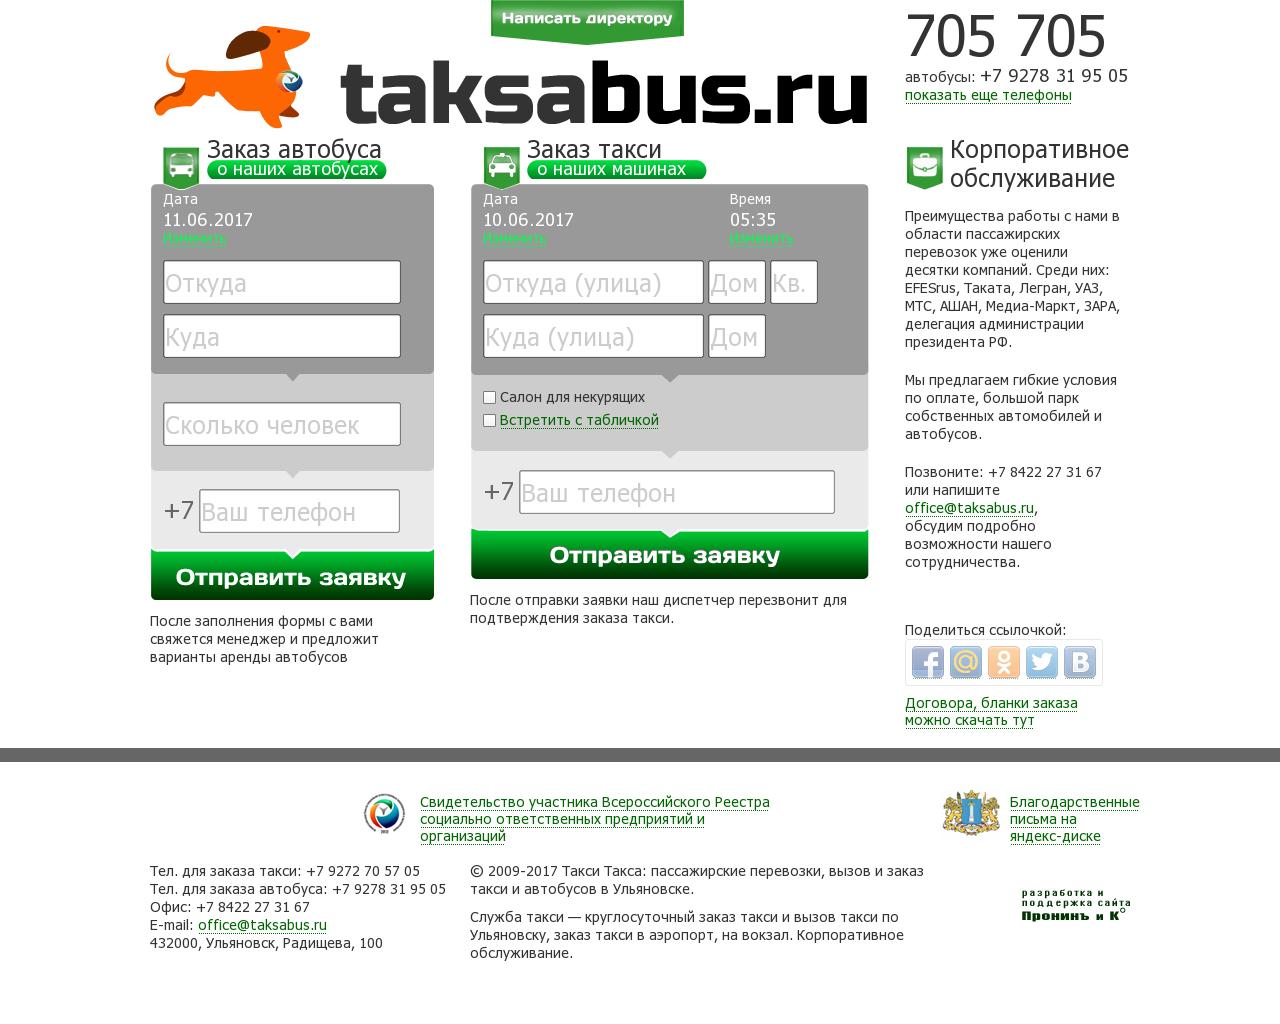 Изображение сайта taksabus.ru в разрешении 1280x1024